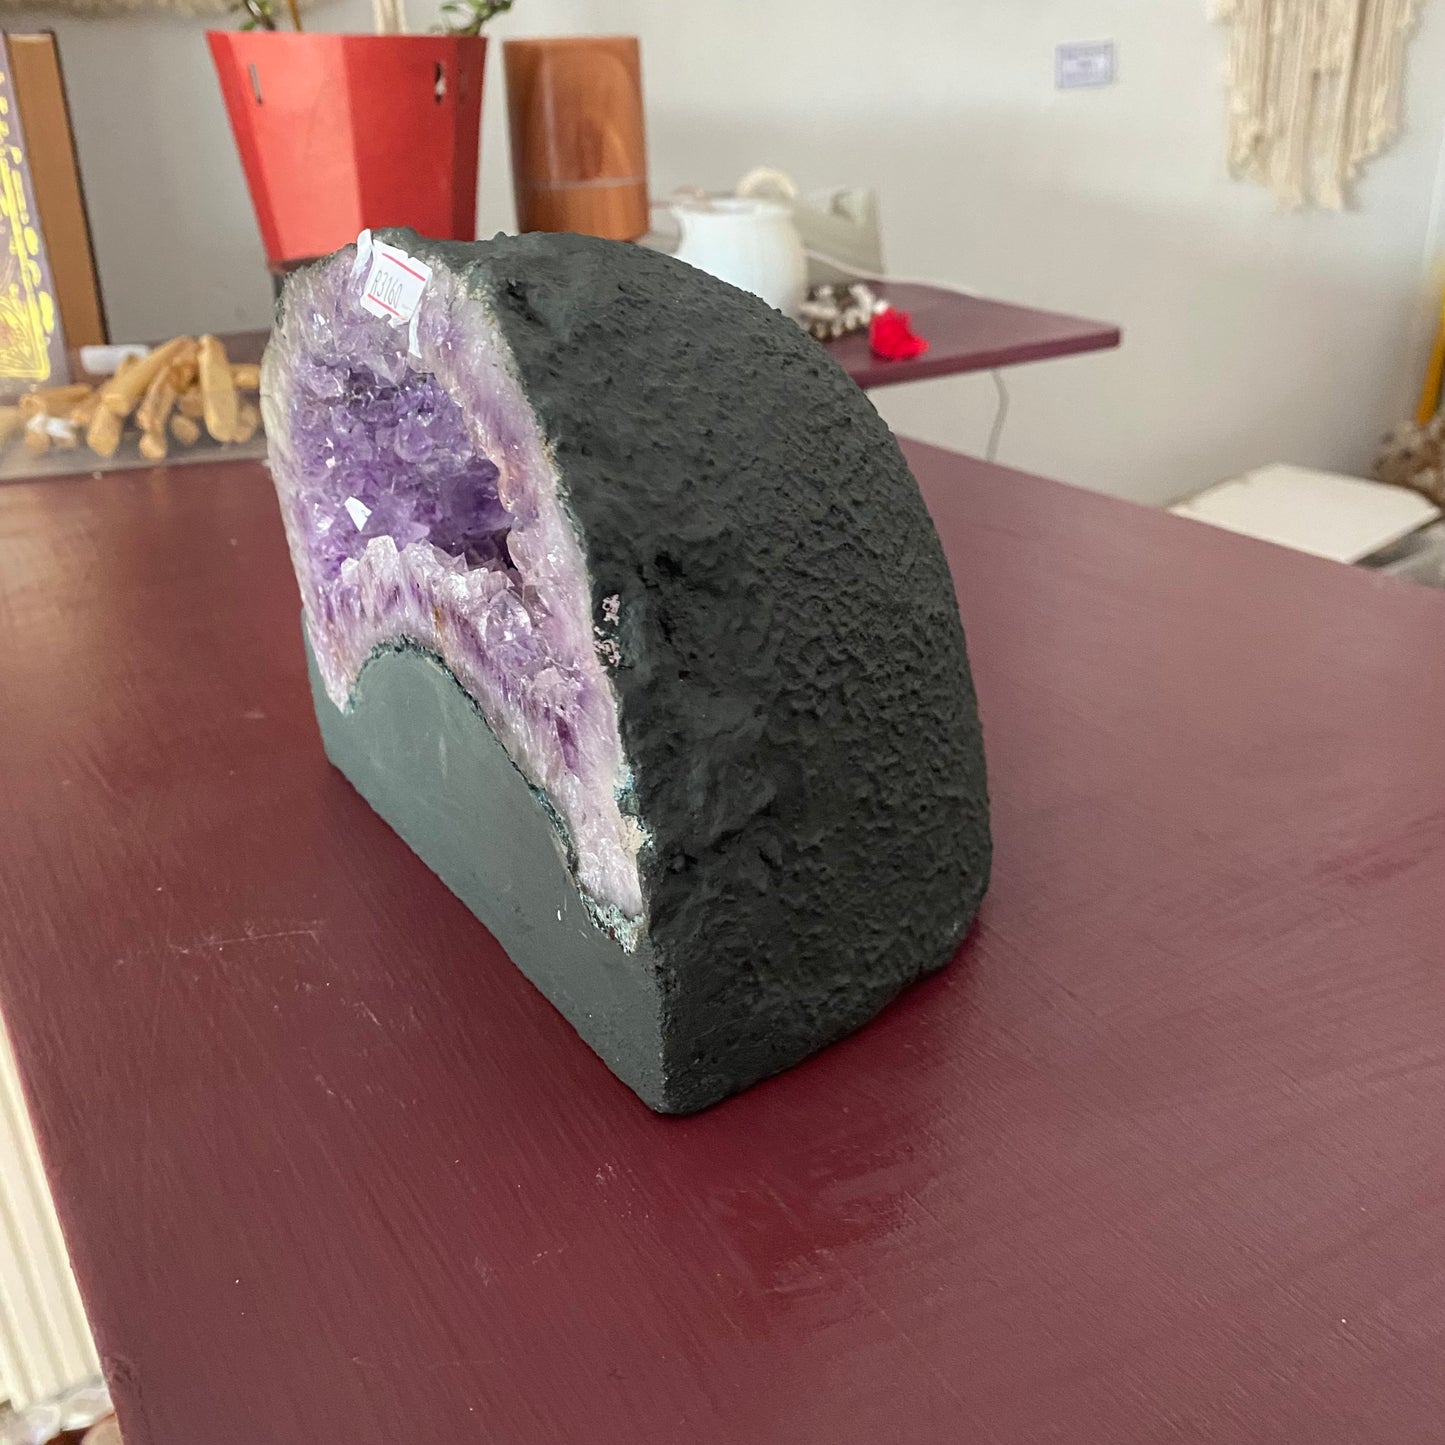 Amethyst Geode - 3,6kg